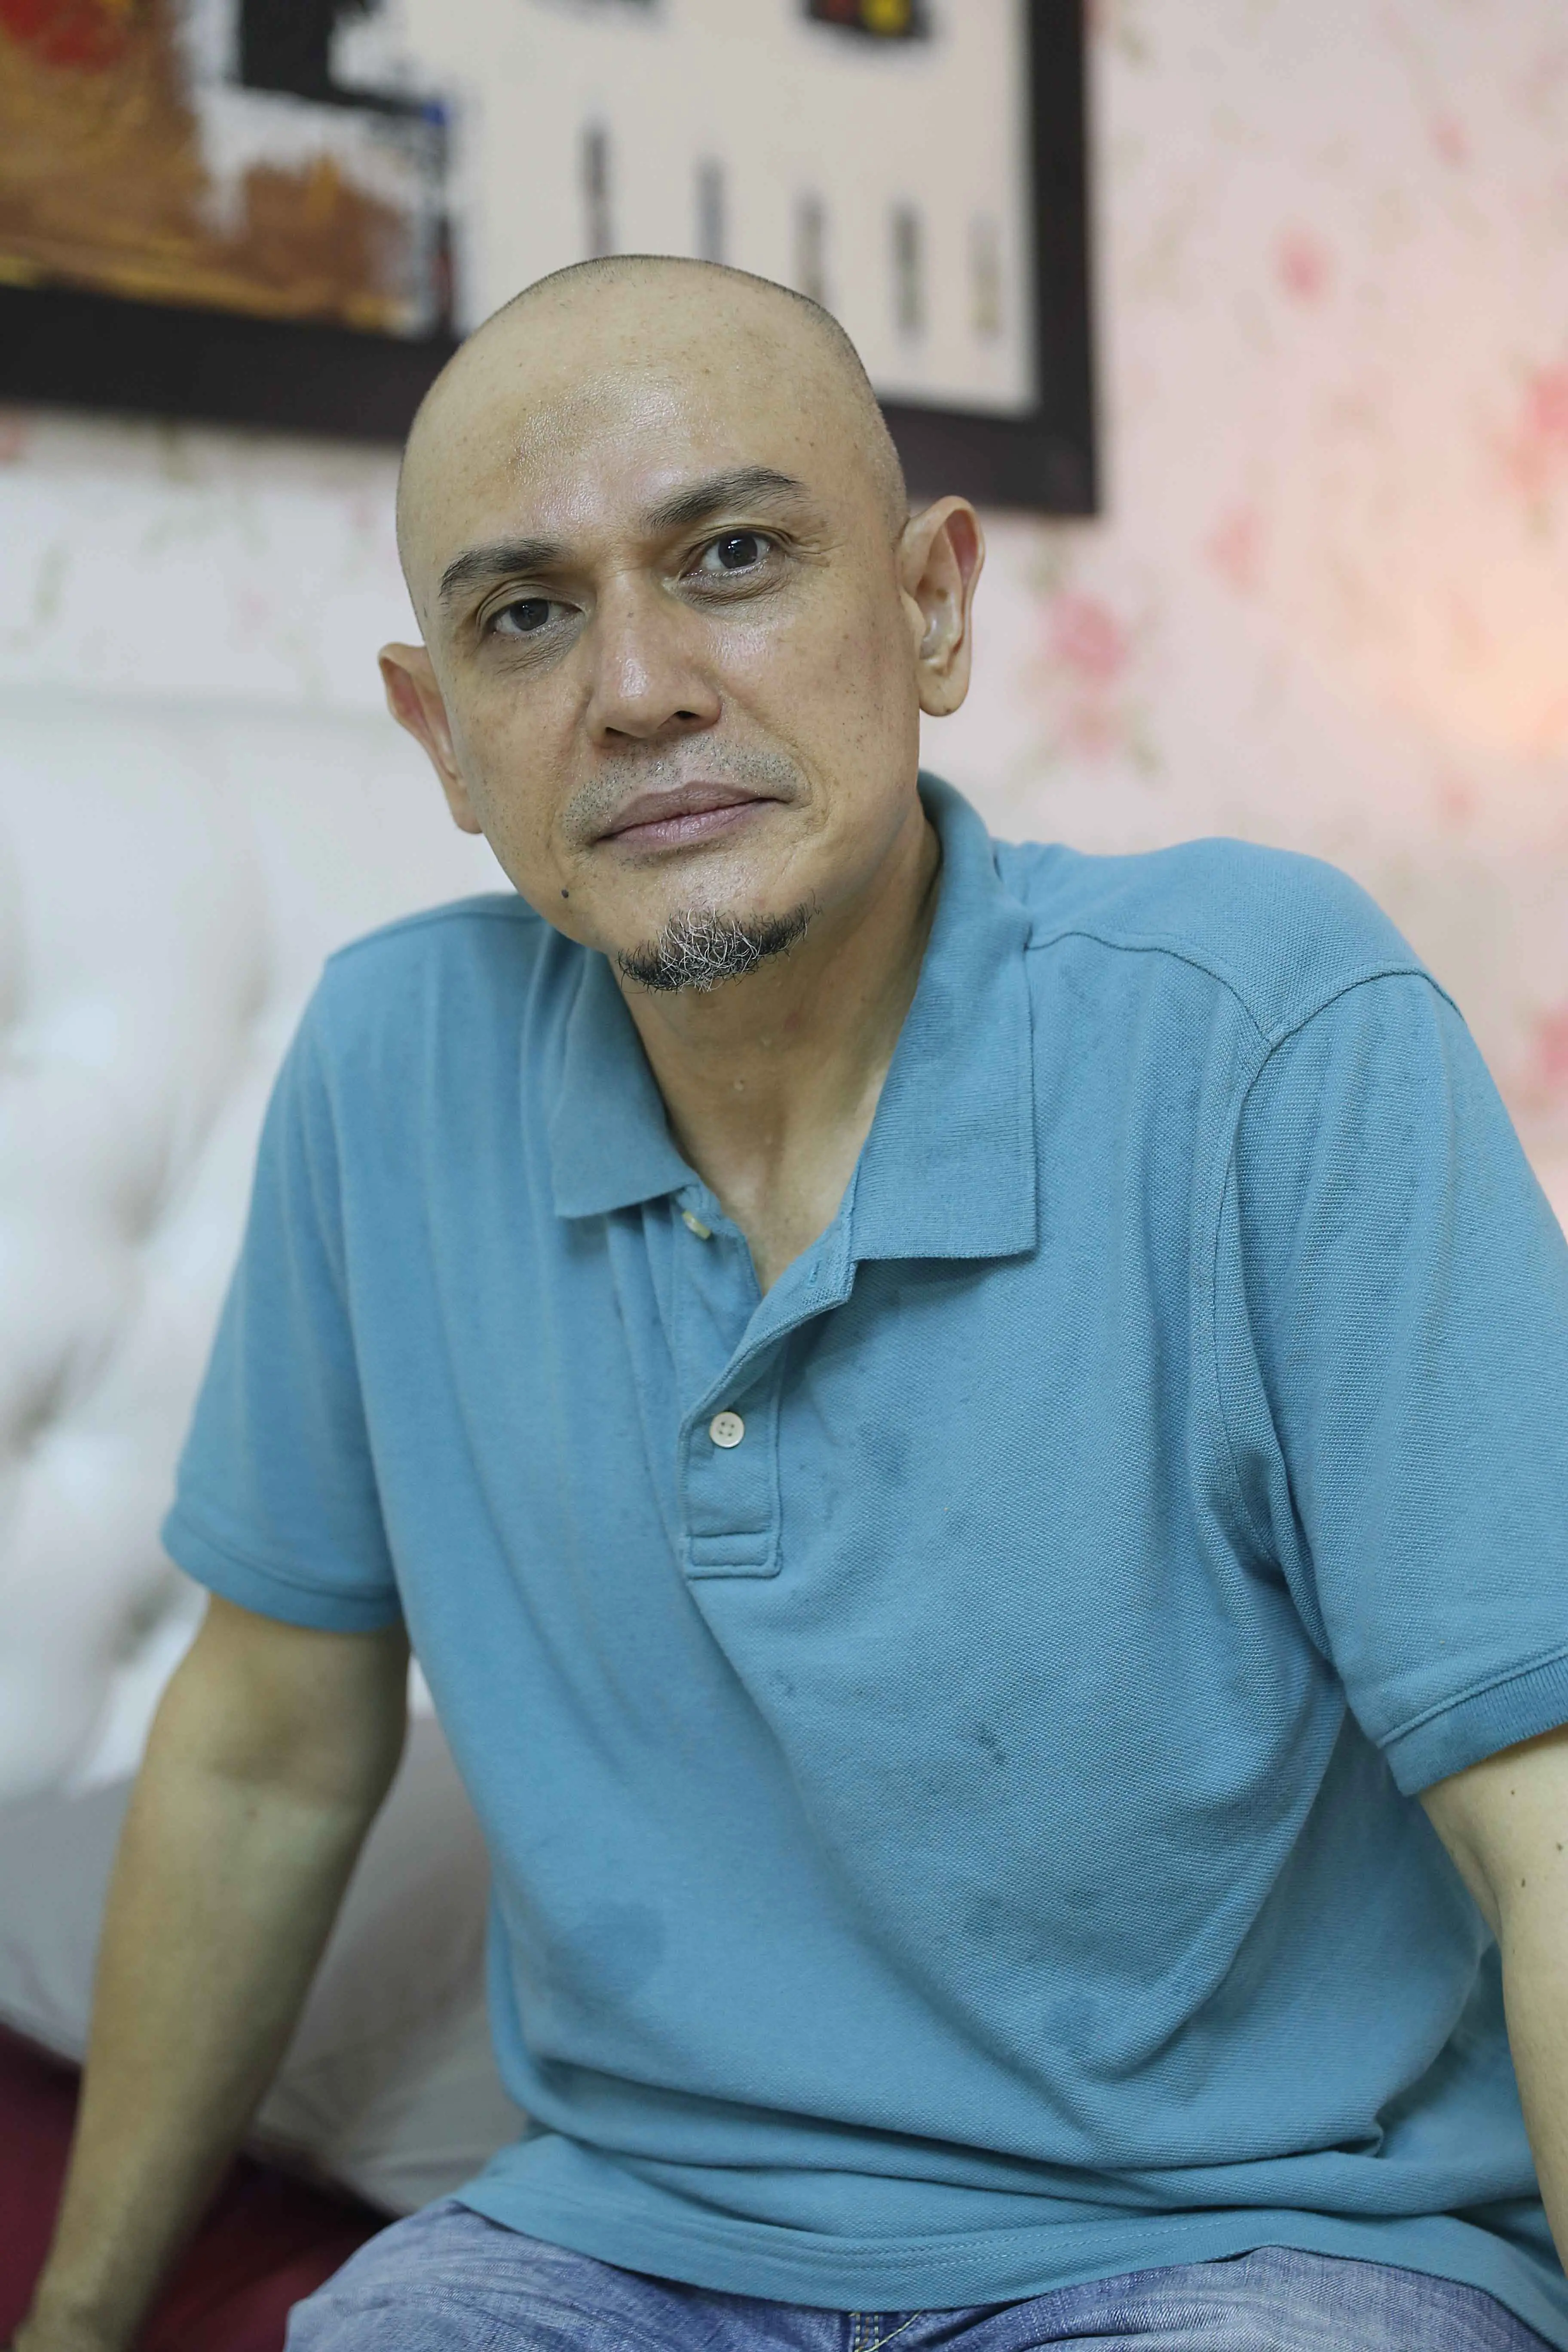 Pernah merasakan ketergantungan terhadap narkoba, Hengky Tornando tidak kesulitan saat bermain dalam film 3 Pilihan. (Nurwahyunan/Bintang.com)